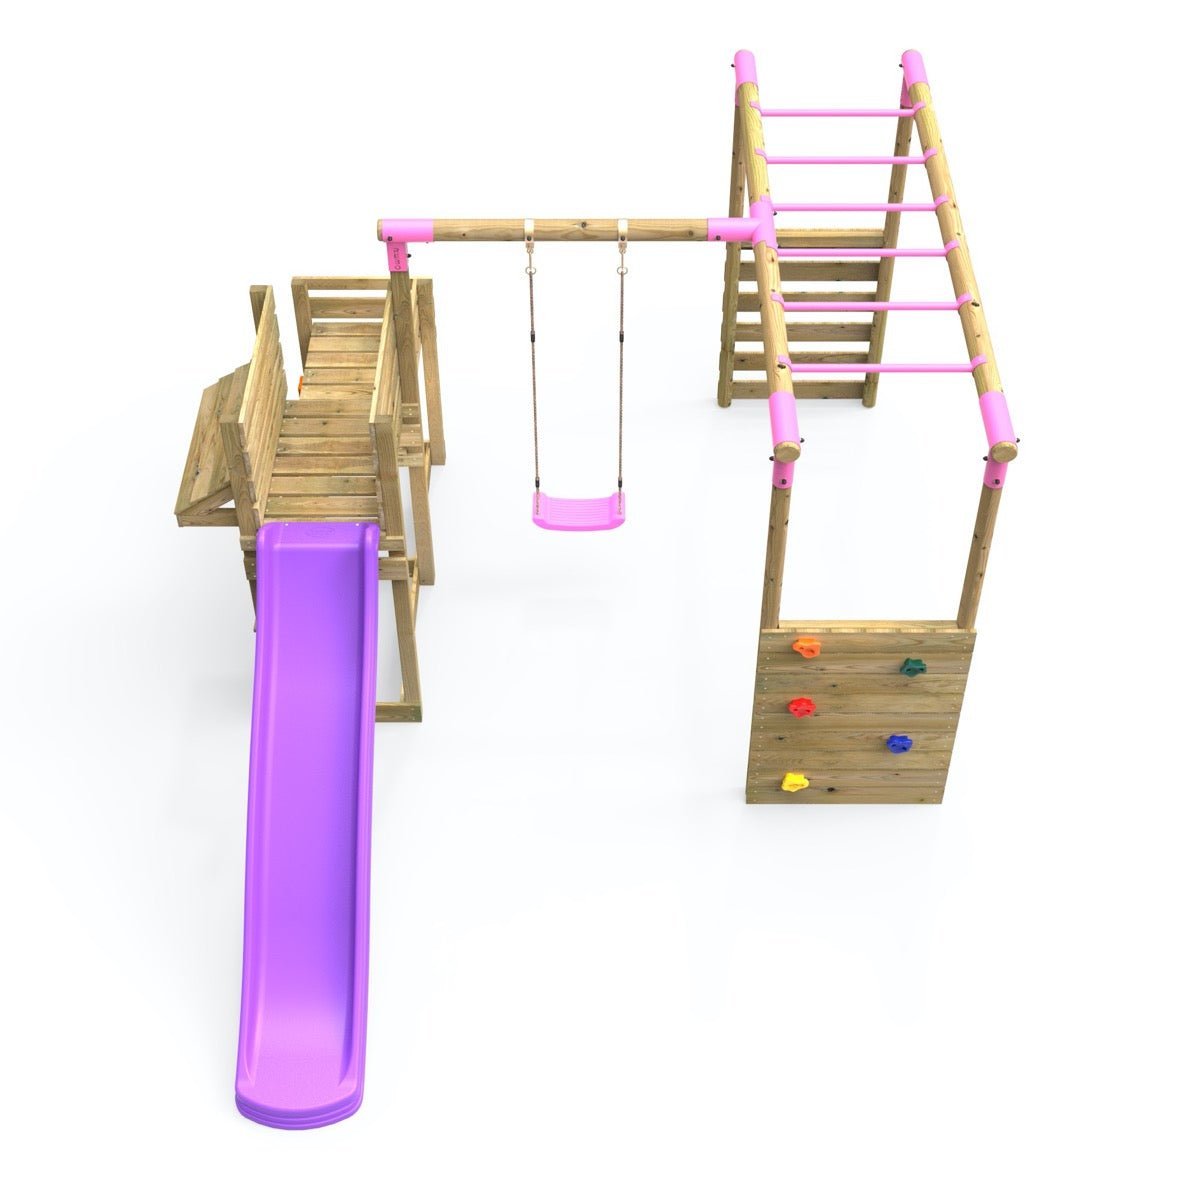 Rebo Wooden Swing Set plus Deluxe Deck, 8FT Slide & Monkey Bars - Solar Pink